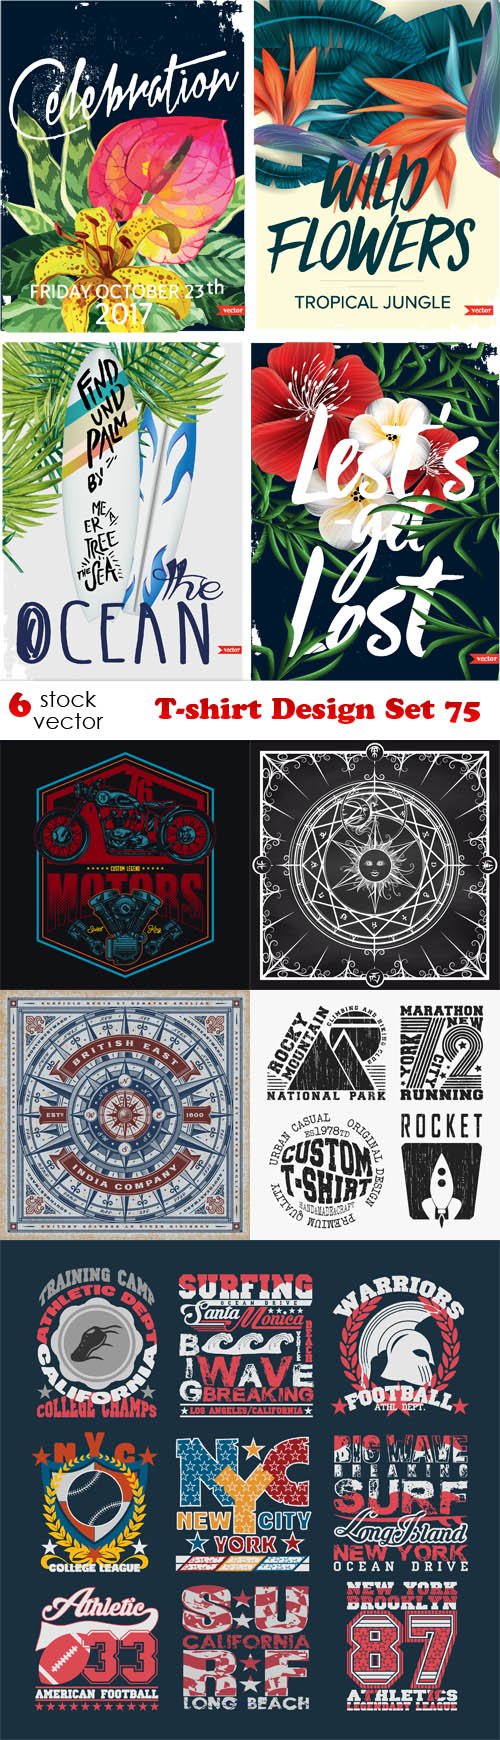 Vectors - T-shirt Design Set 75